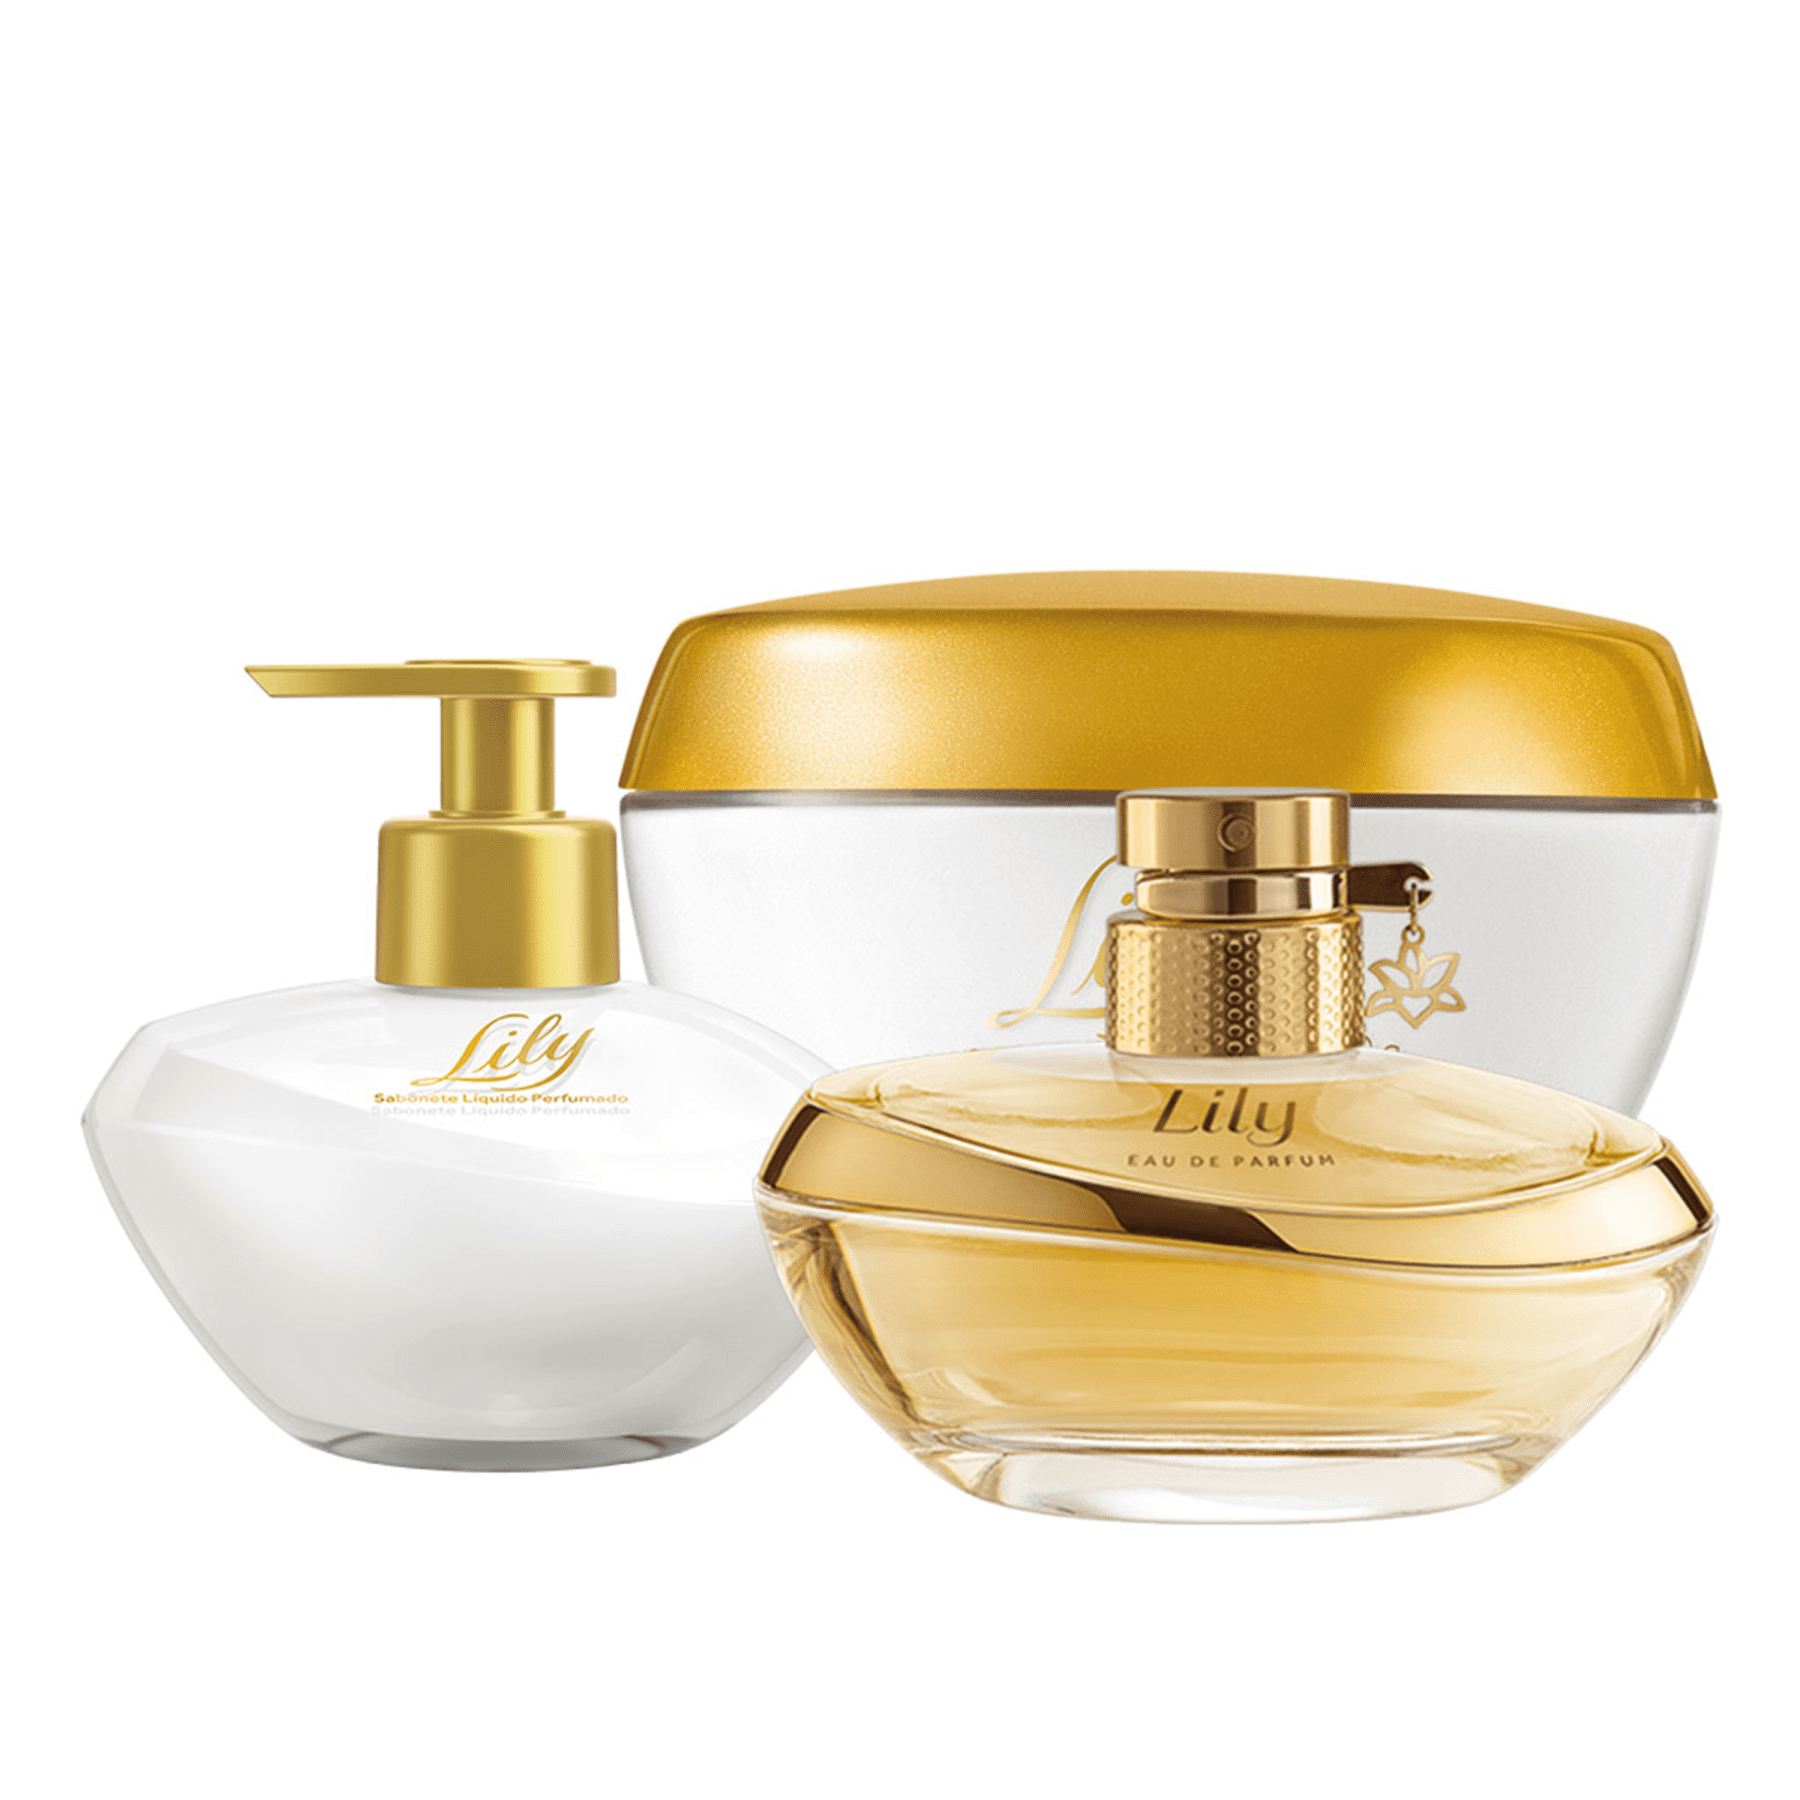 Kit Lily: Eau De Parfum + Cream Moisturizing Body Deodorant + Liquid Soap Hands - o Boticario